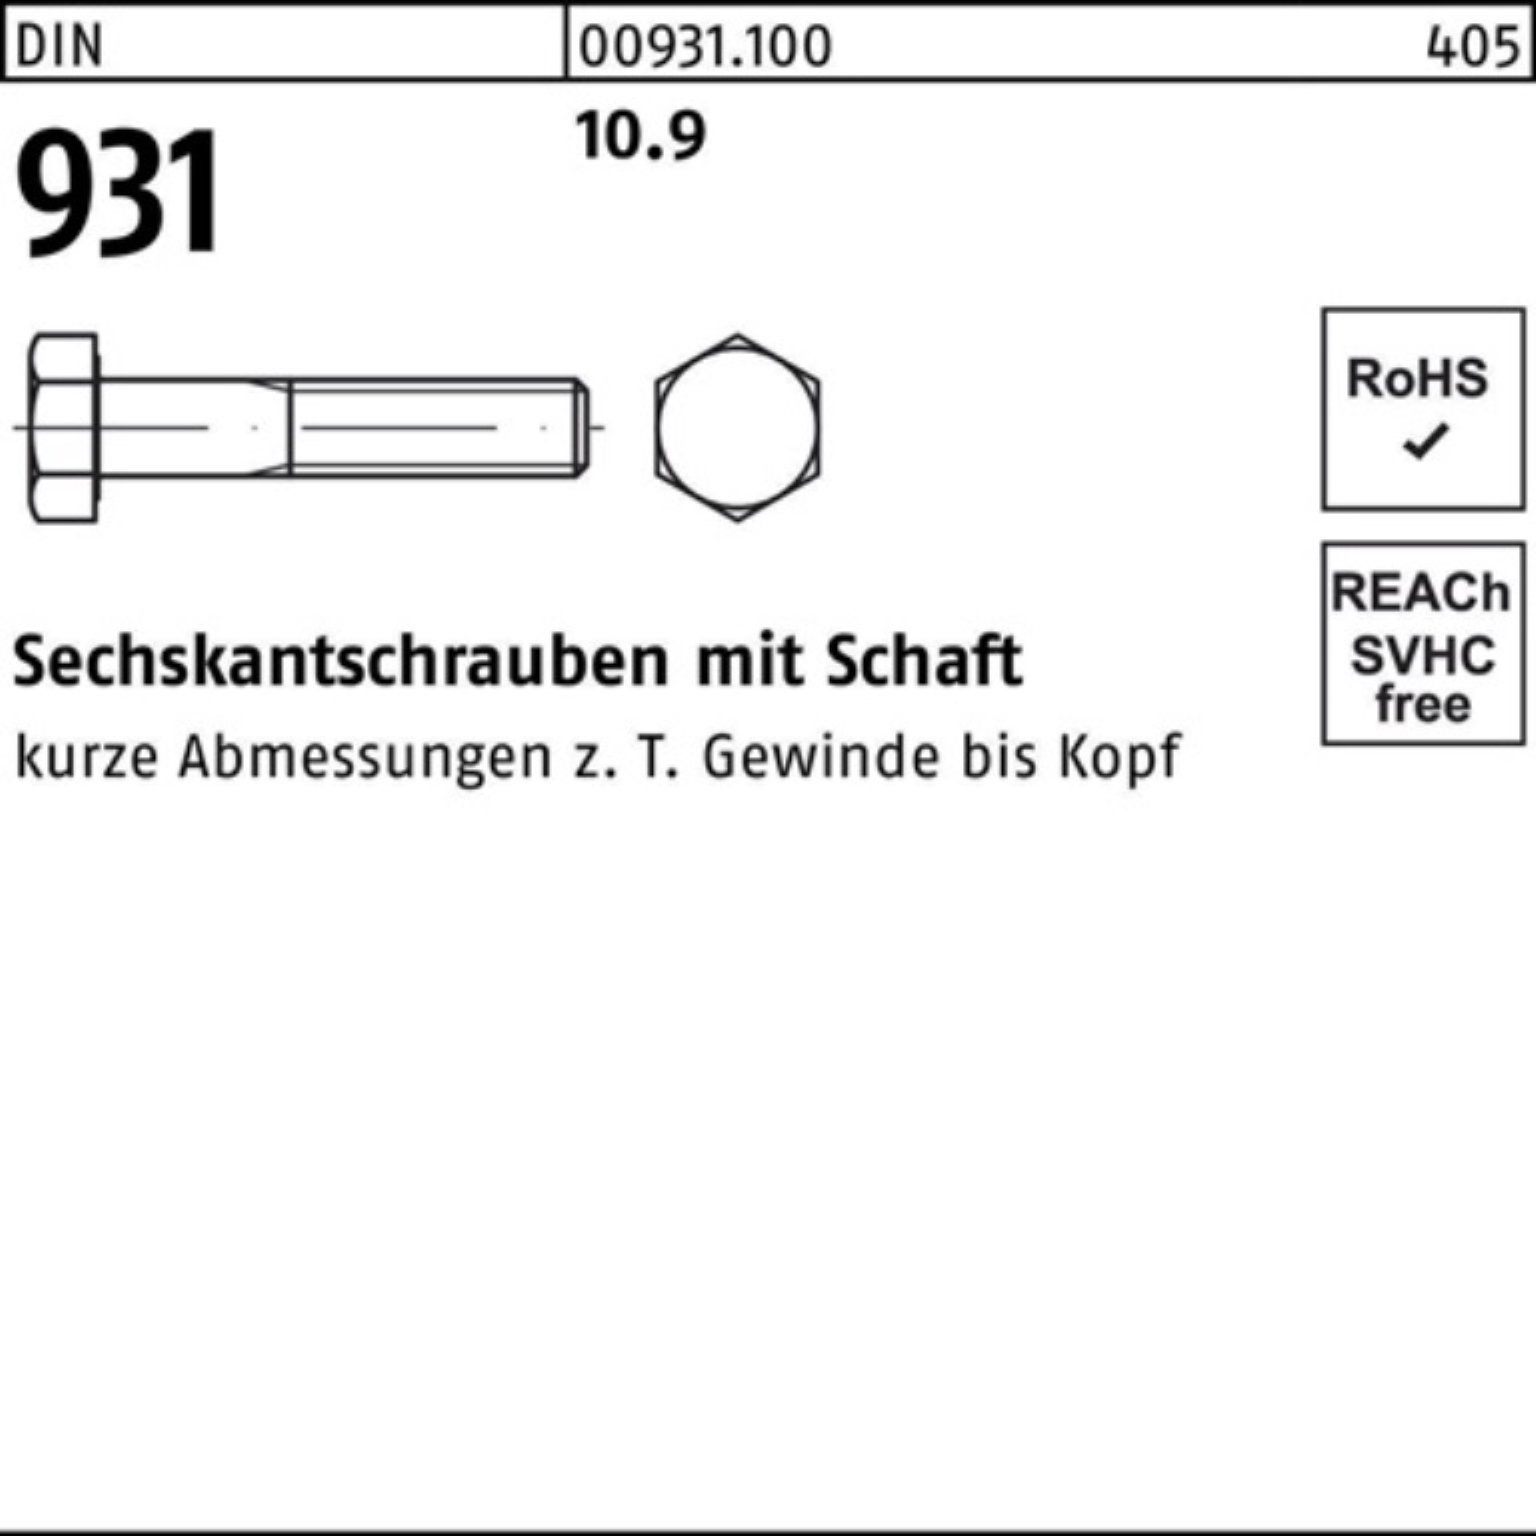 Reyher Sechskantschraube 100er Pack Sechskantschraube Schaft 240 Stück 931 1 10.9 DIN DIN M18x